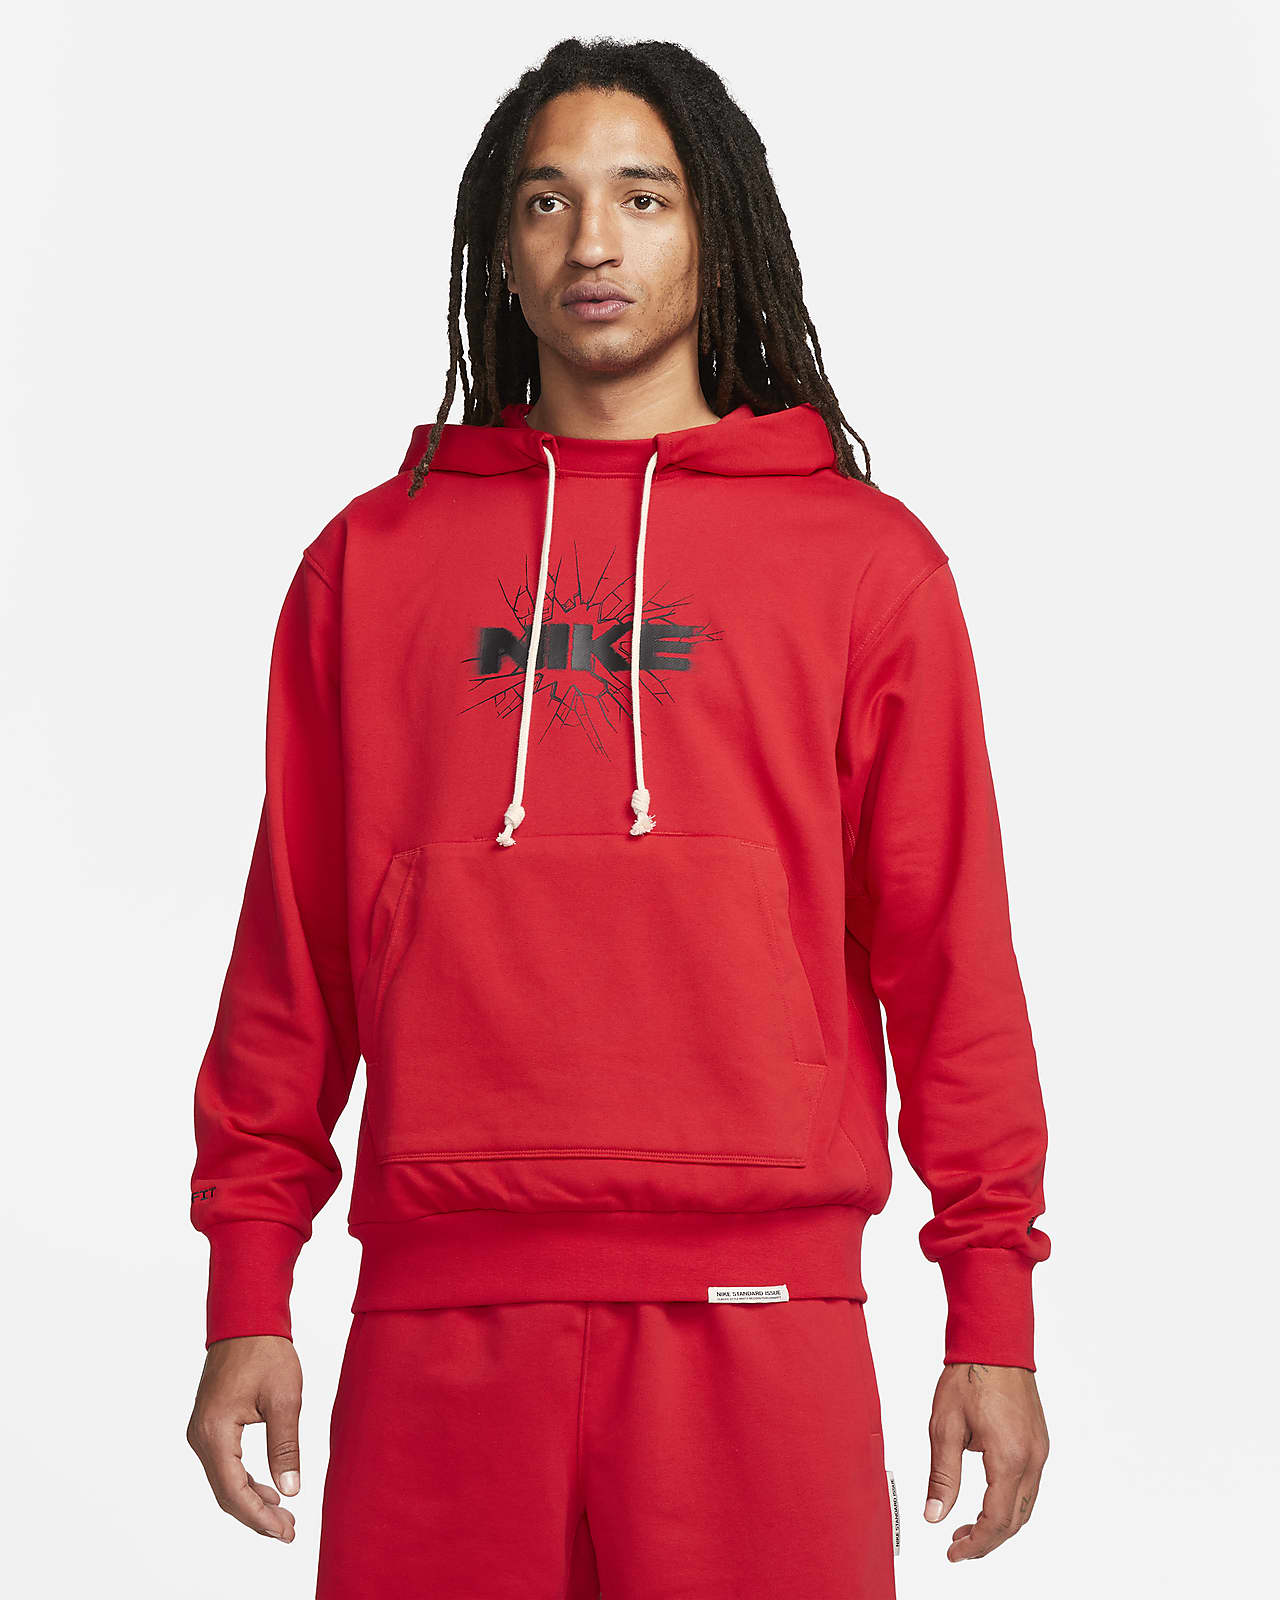 Veste de survêtement Nike Sportswear Standard Issue pour homme. Nike LU